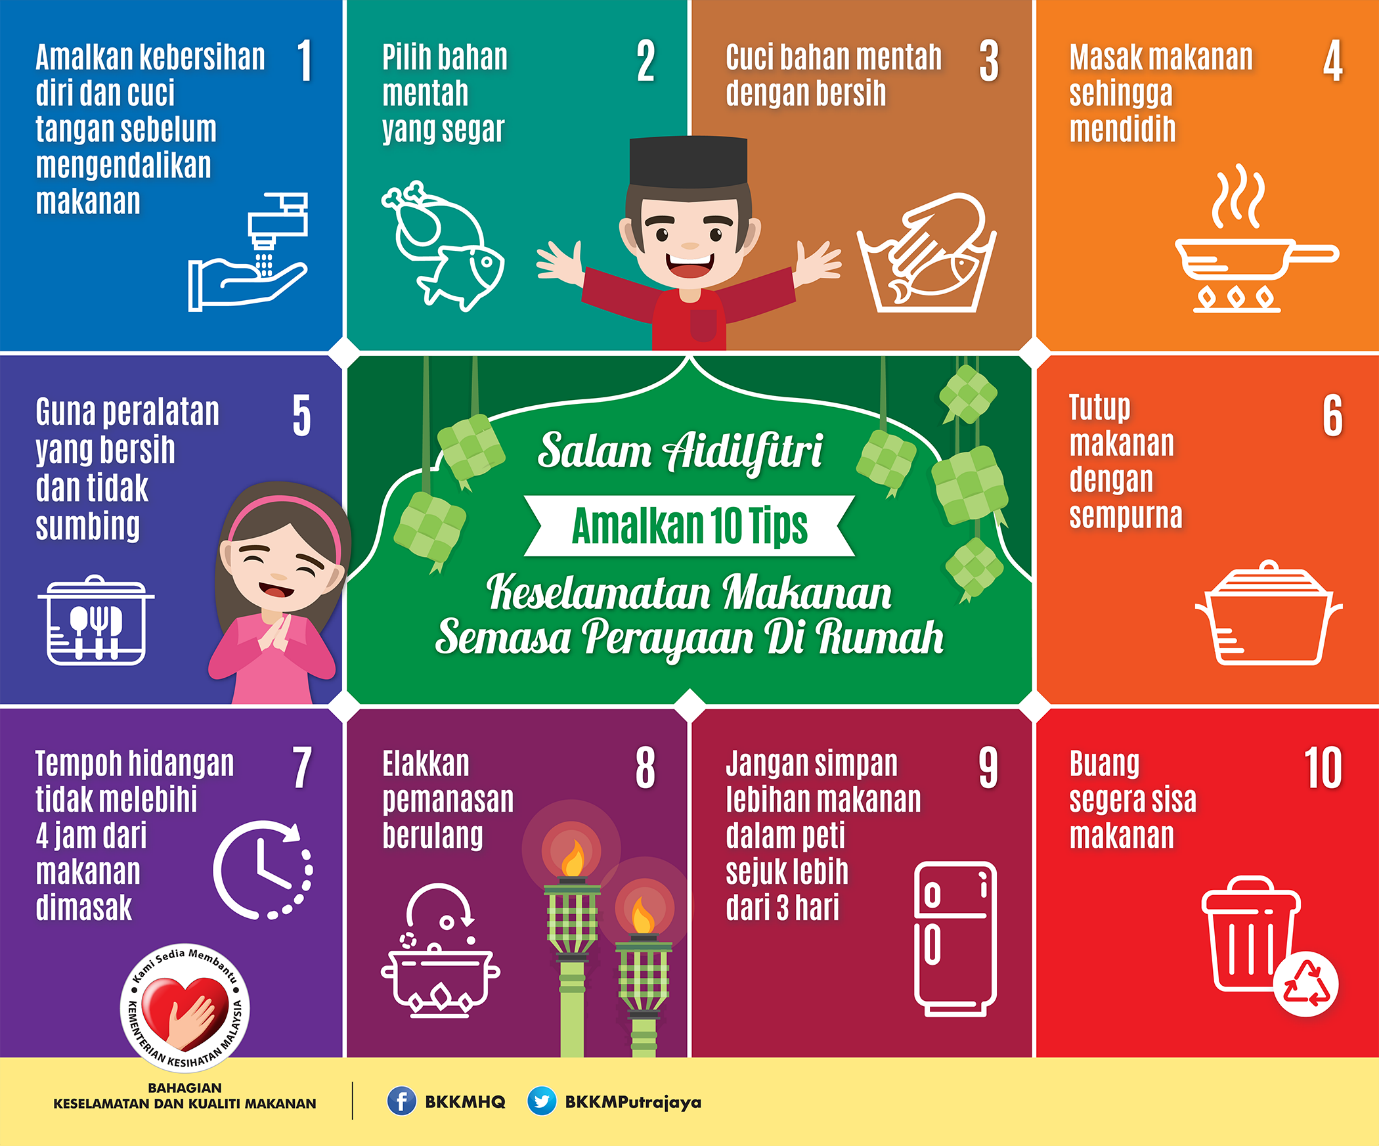 Bahagian Keselamatan Dan Kualiti Makanan Selangor - Bahagian Keselamatan dan Kualiti Makanan - Program keselamatan dan kesehatan kerja dalam uu k3.